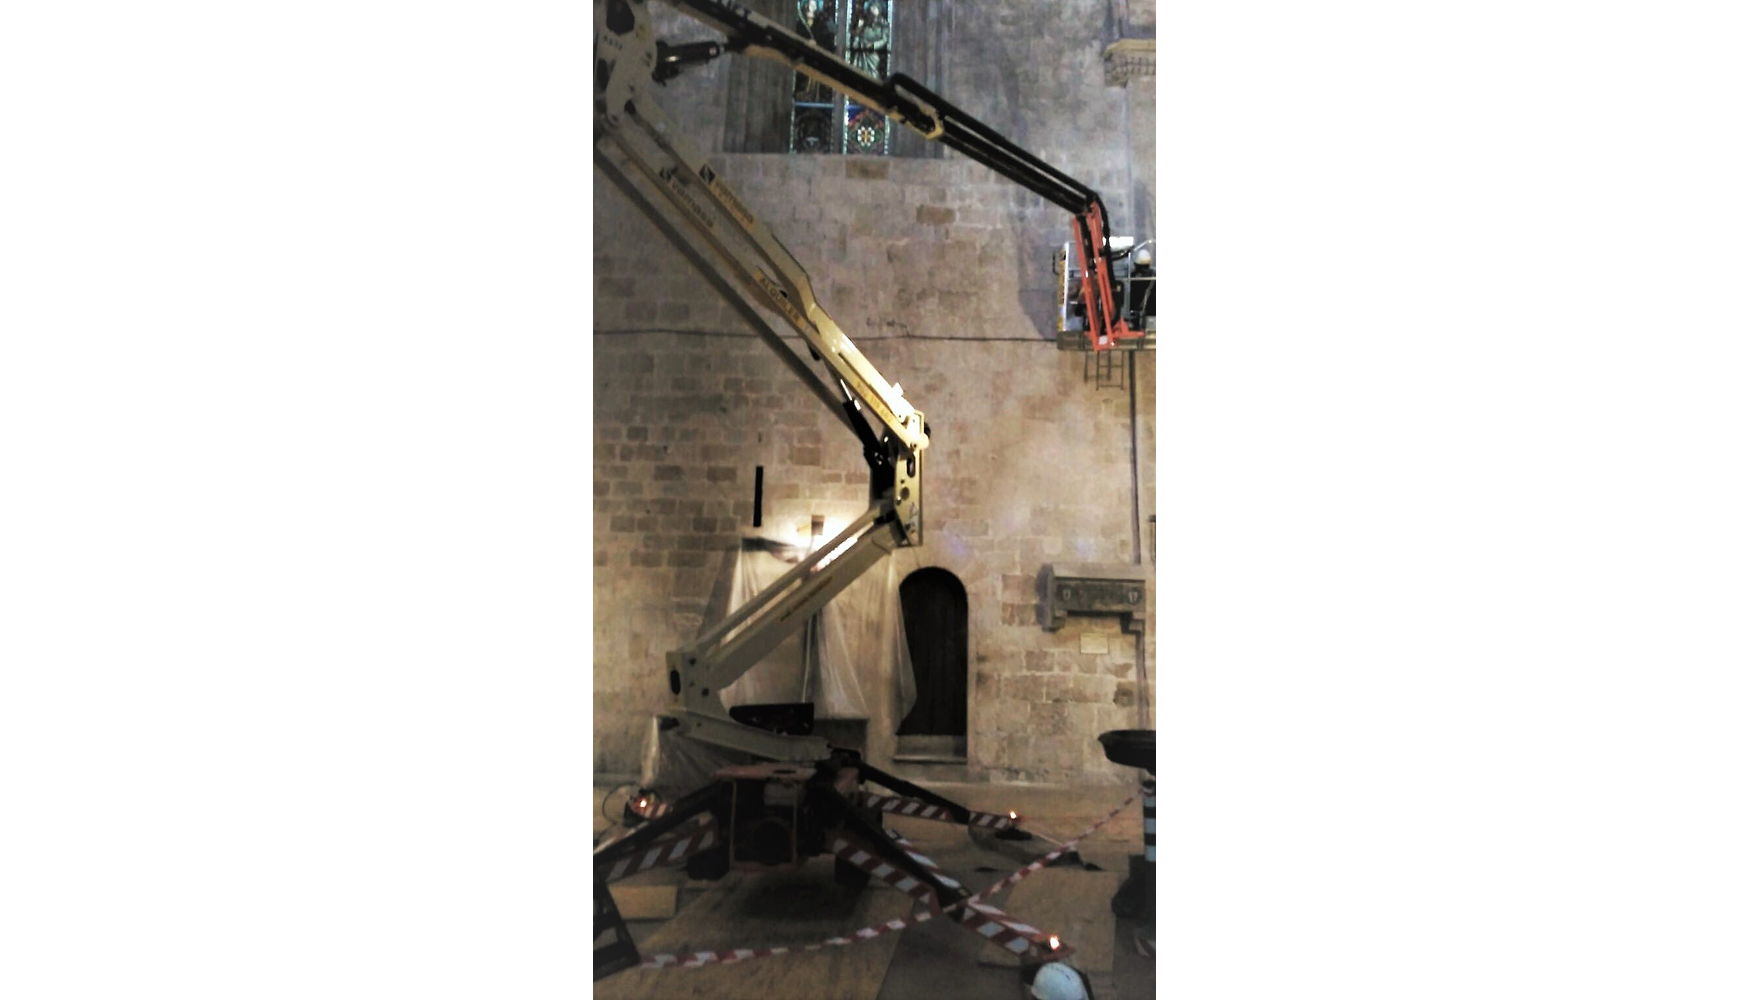 Plataforma de oruga X17J de JLG operando en el monasterio de San Cugat del Valls